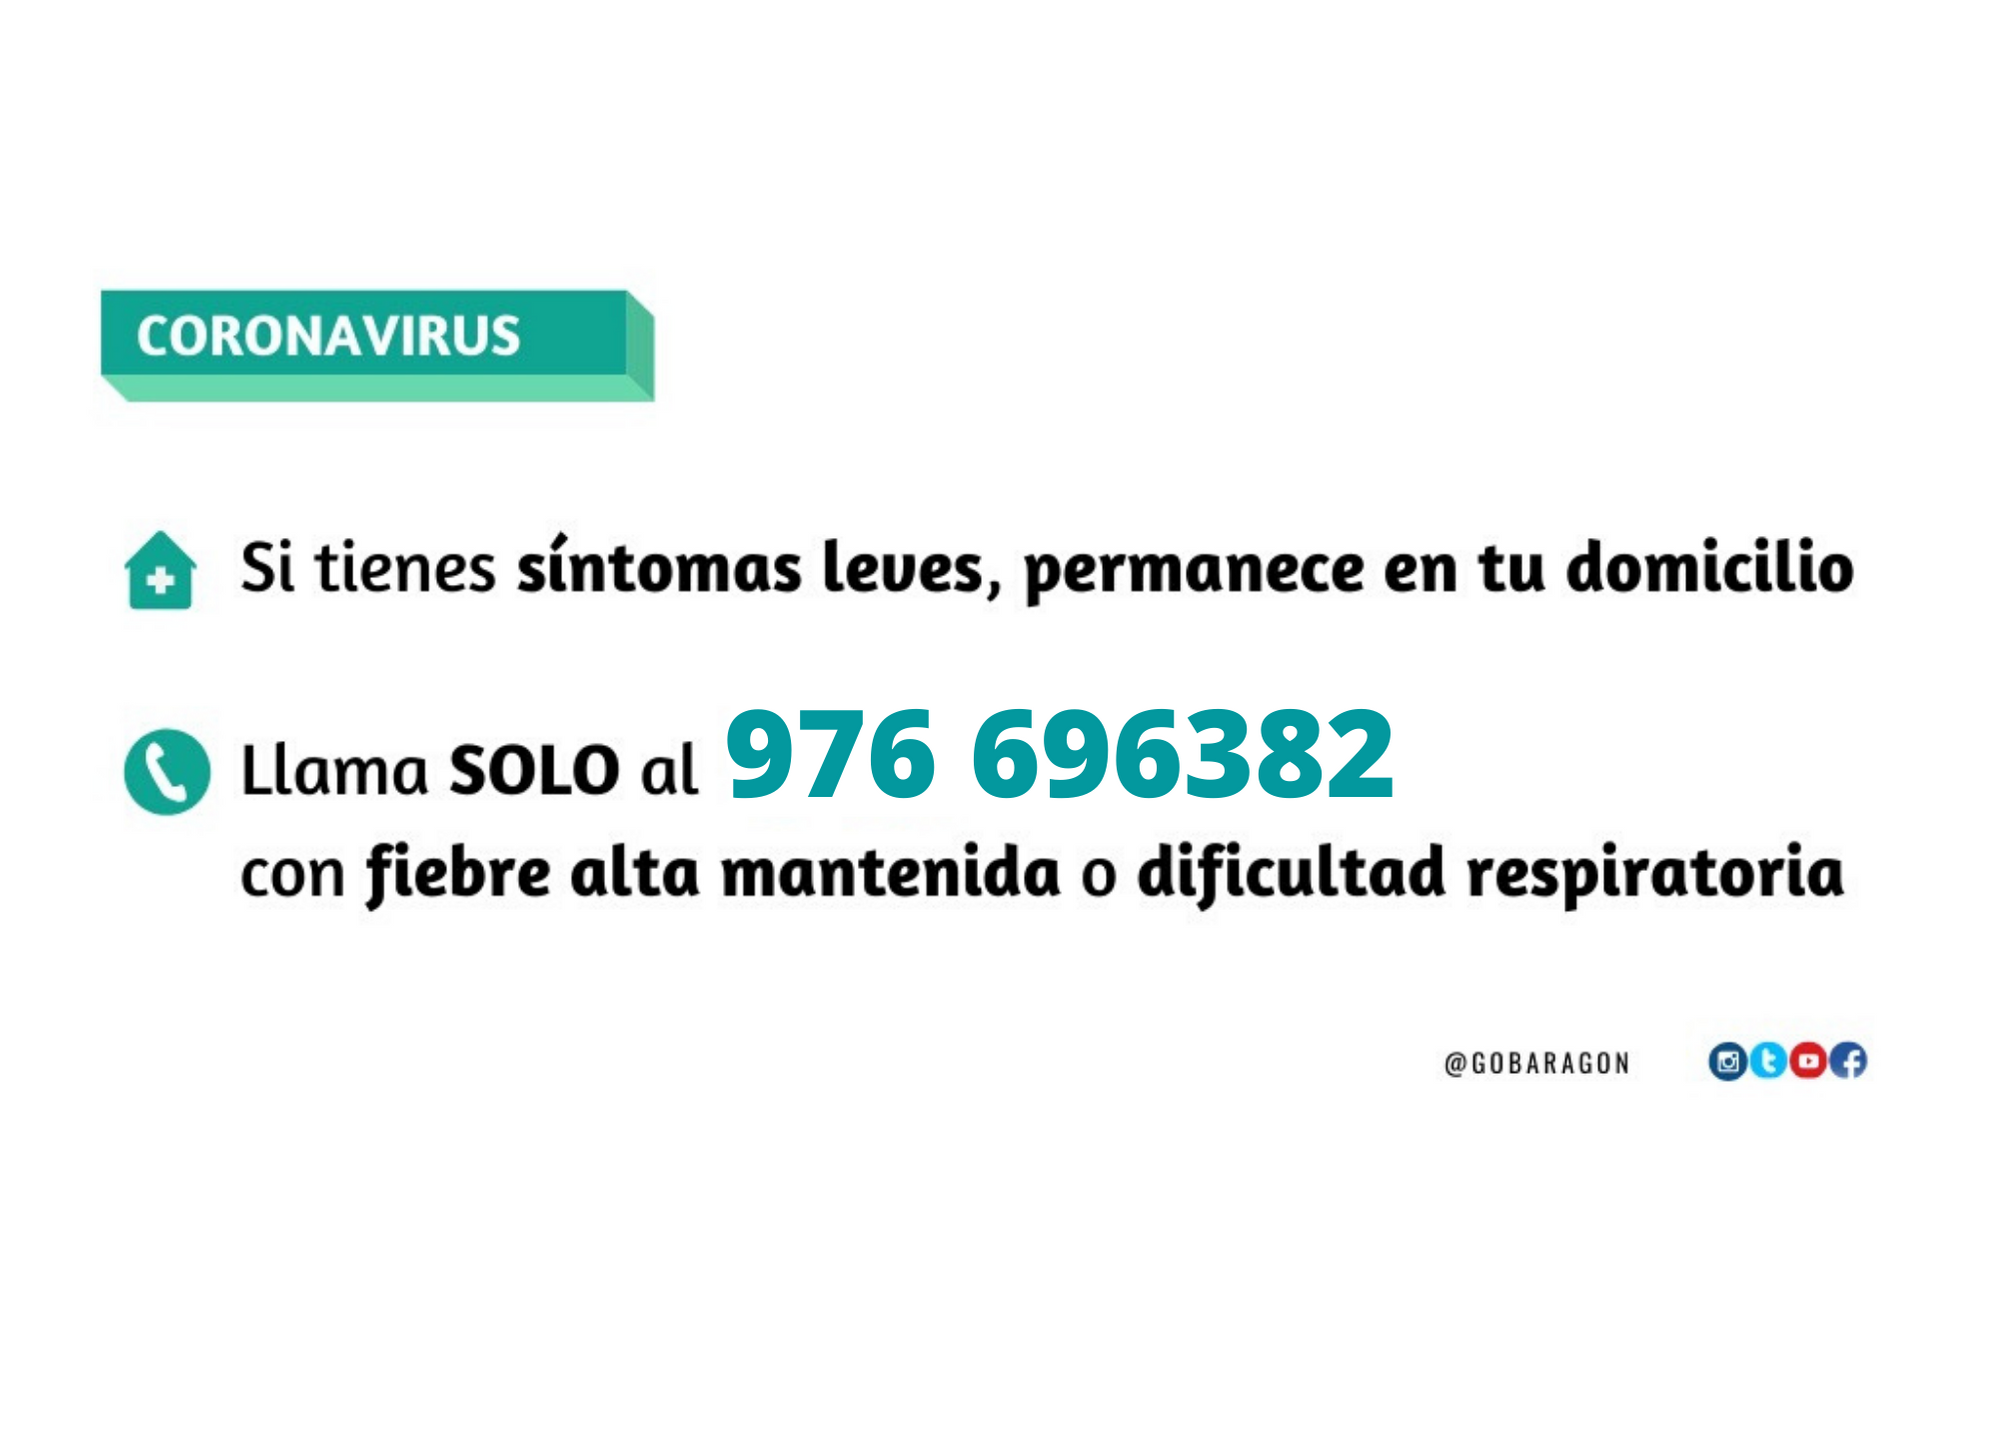 Información sobre el coronavirus en español